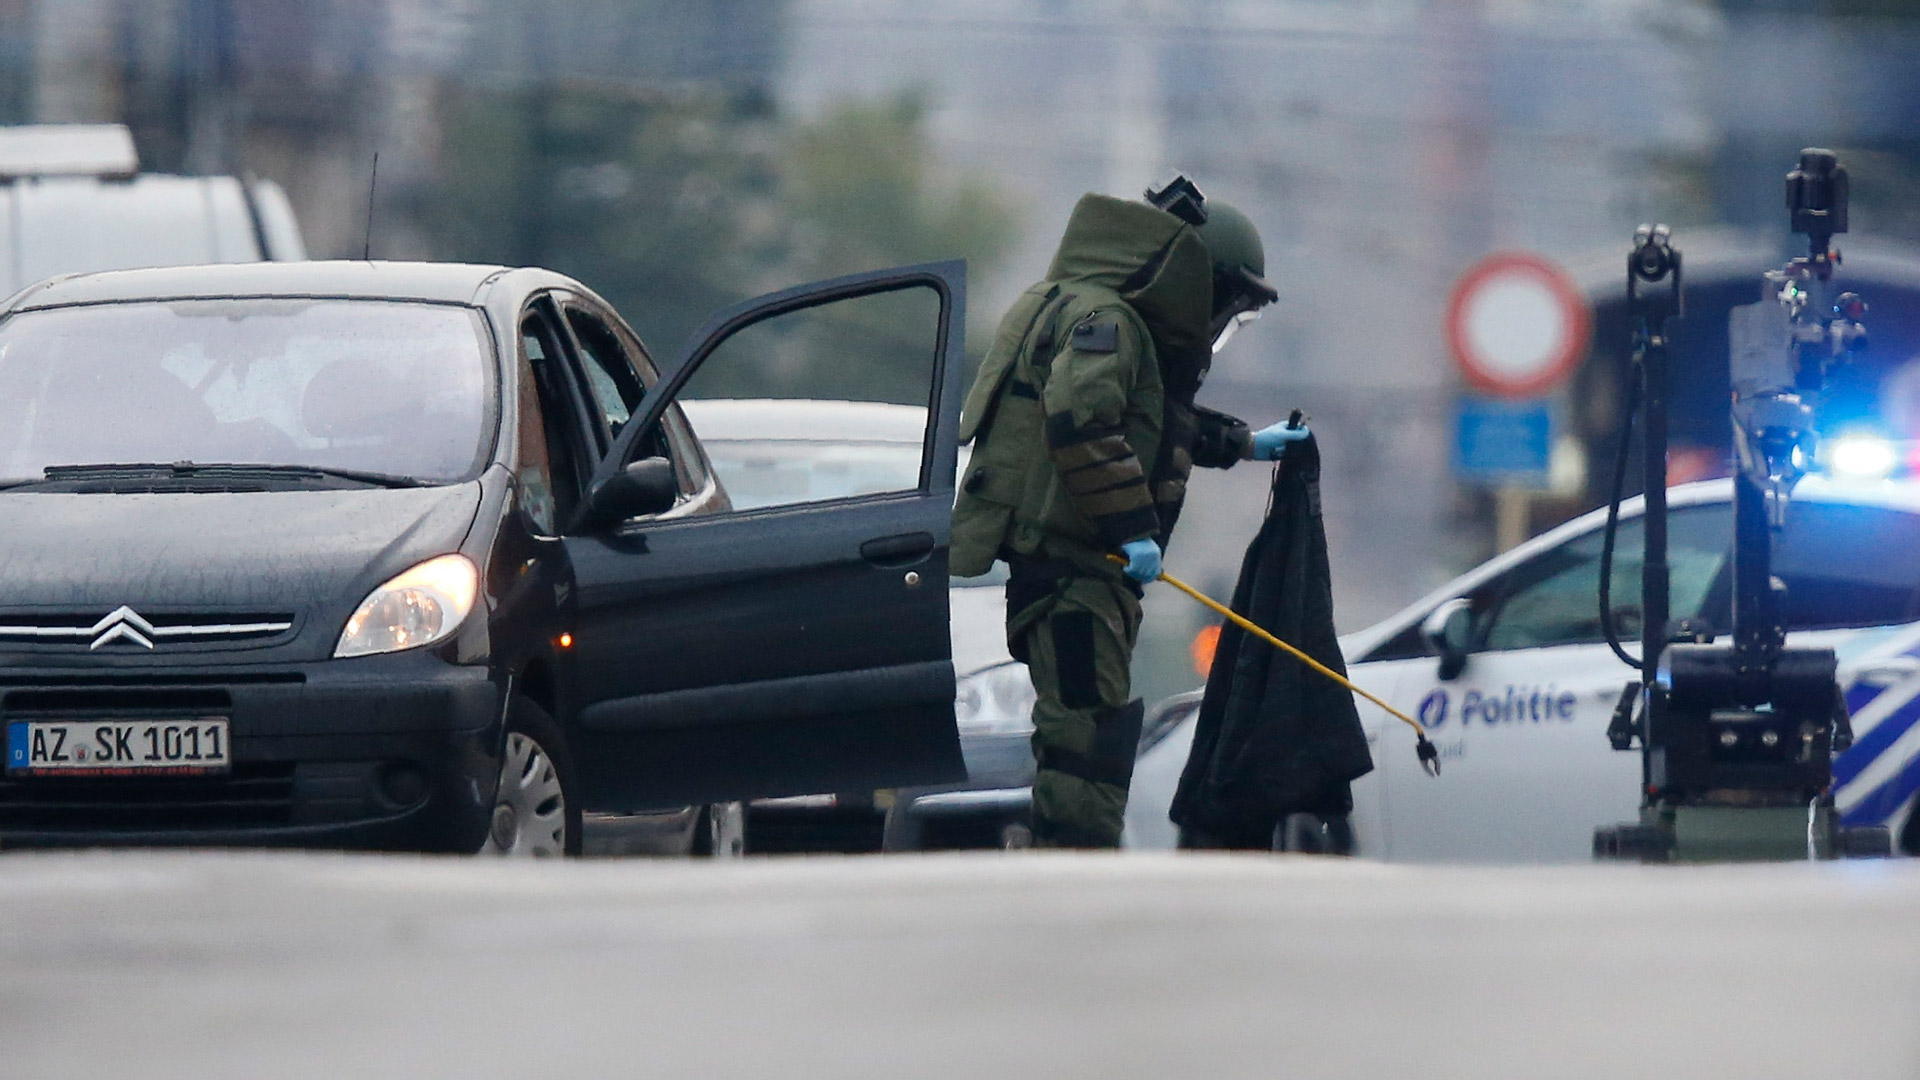 La policía detiene en Bruselas a un conductor sospechoso de llevar explosivos